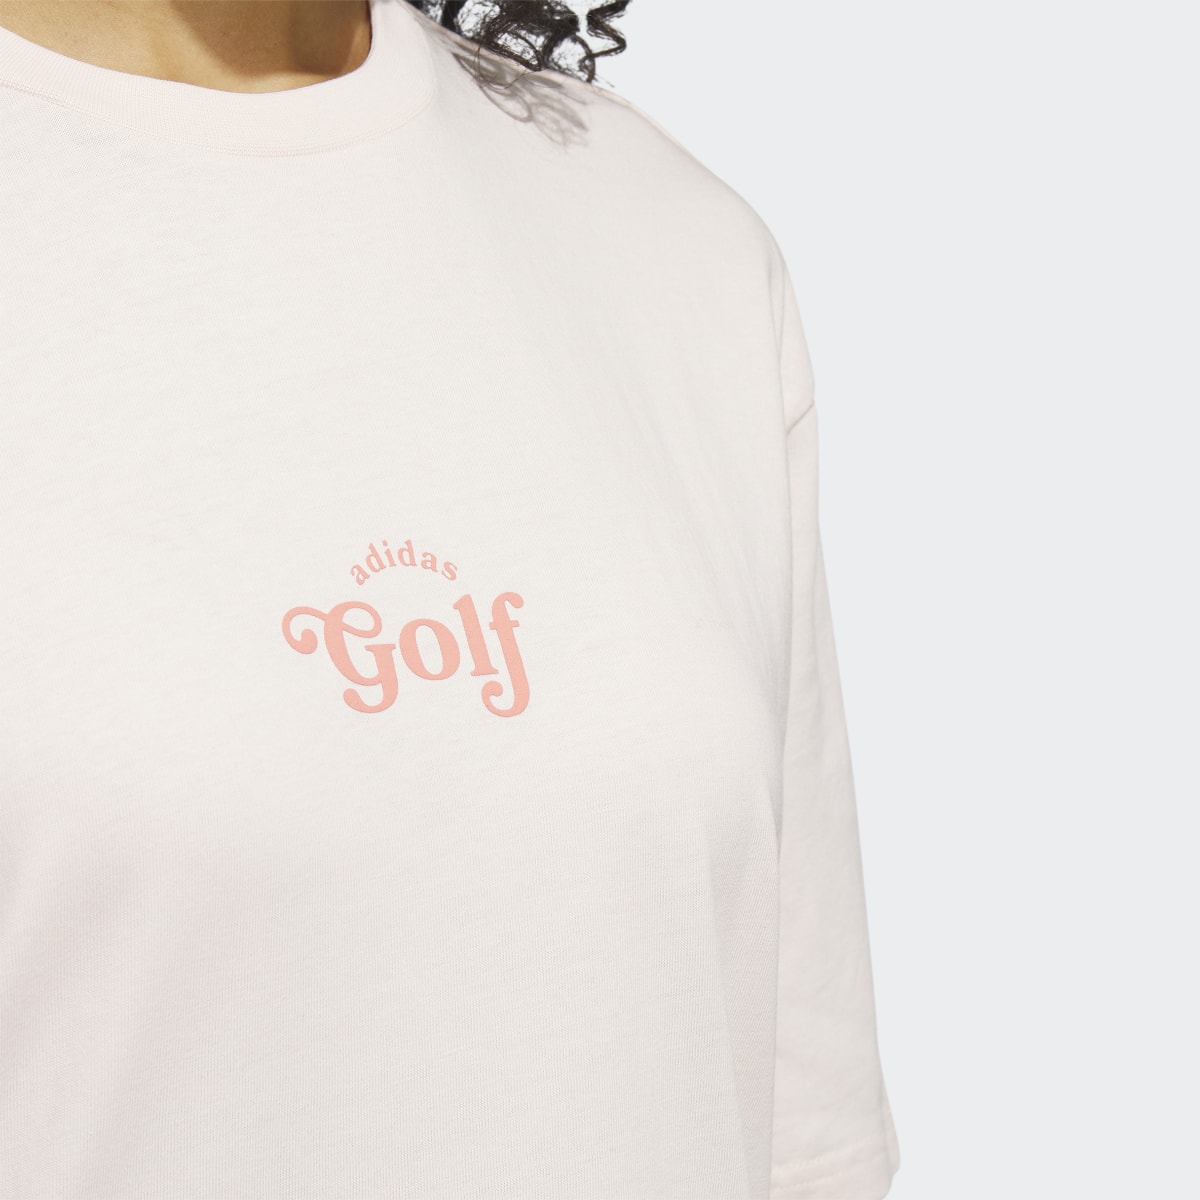 Adidas T-shirt de golf graphique. 7